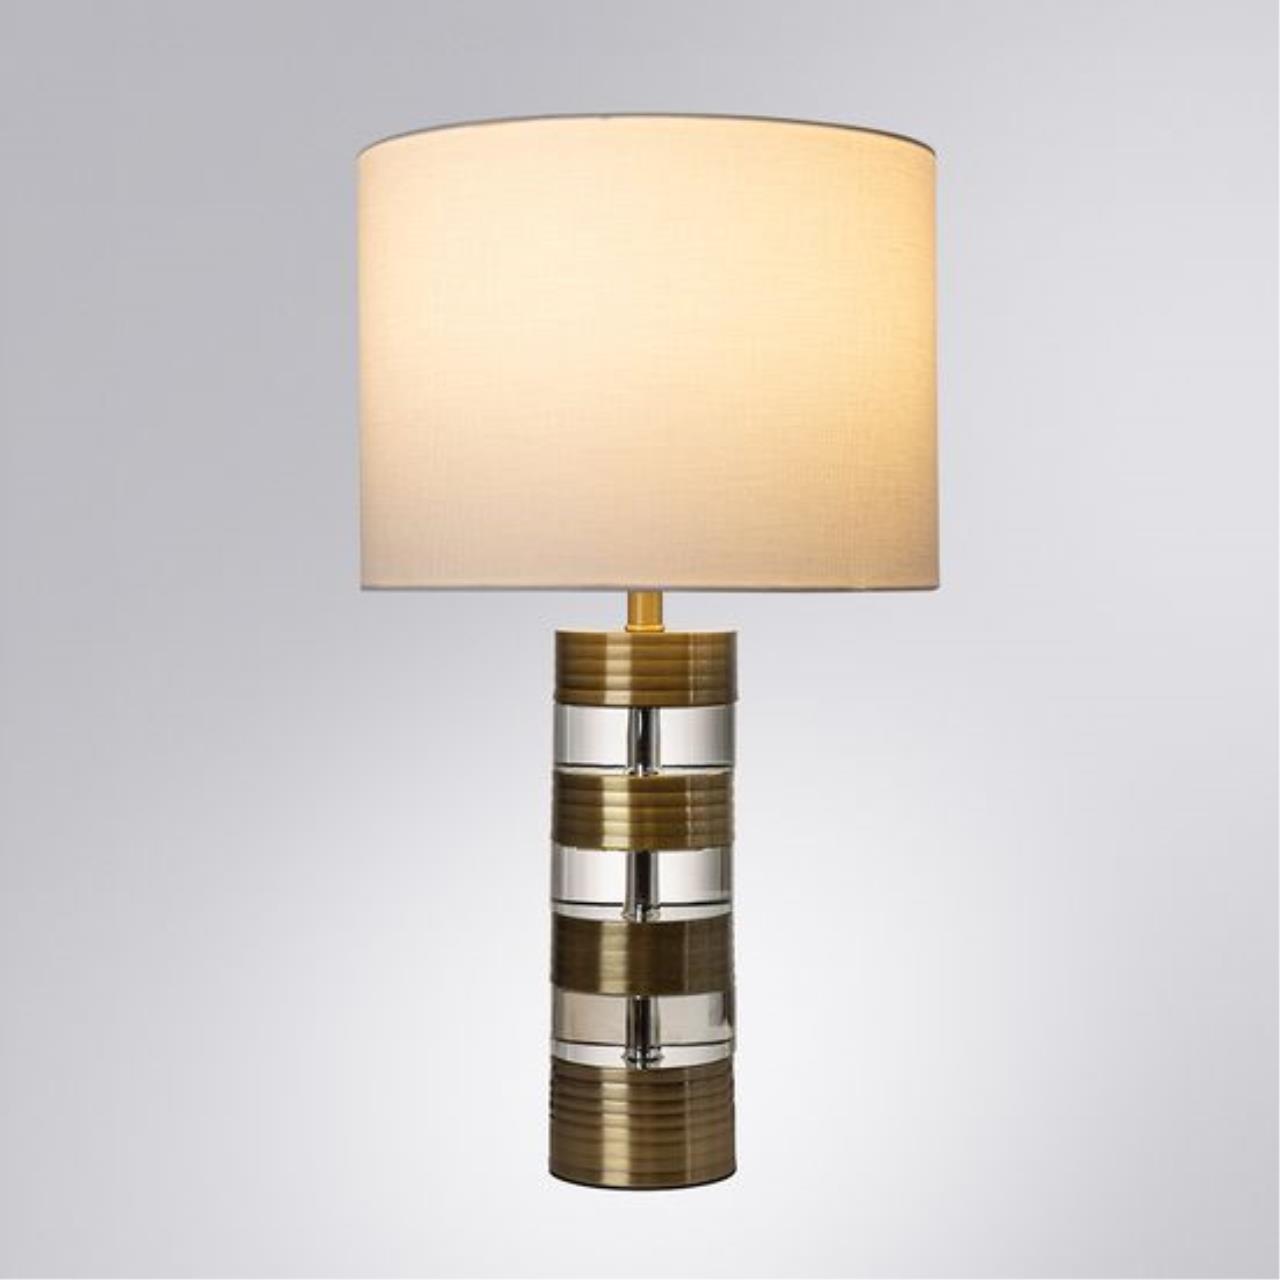 Интерьерная настольная лампа Arte lamp A5057LT-1AB